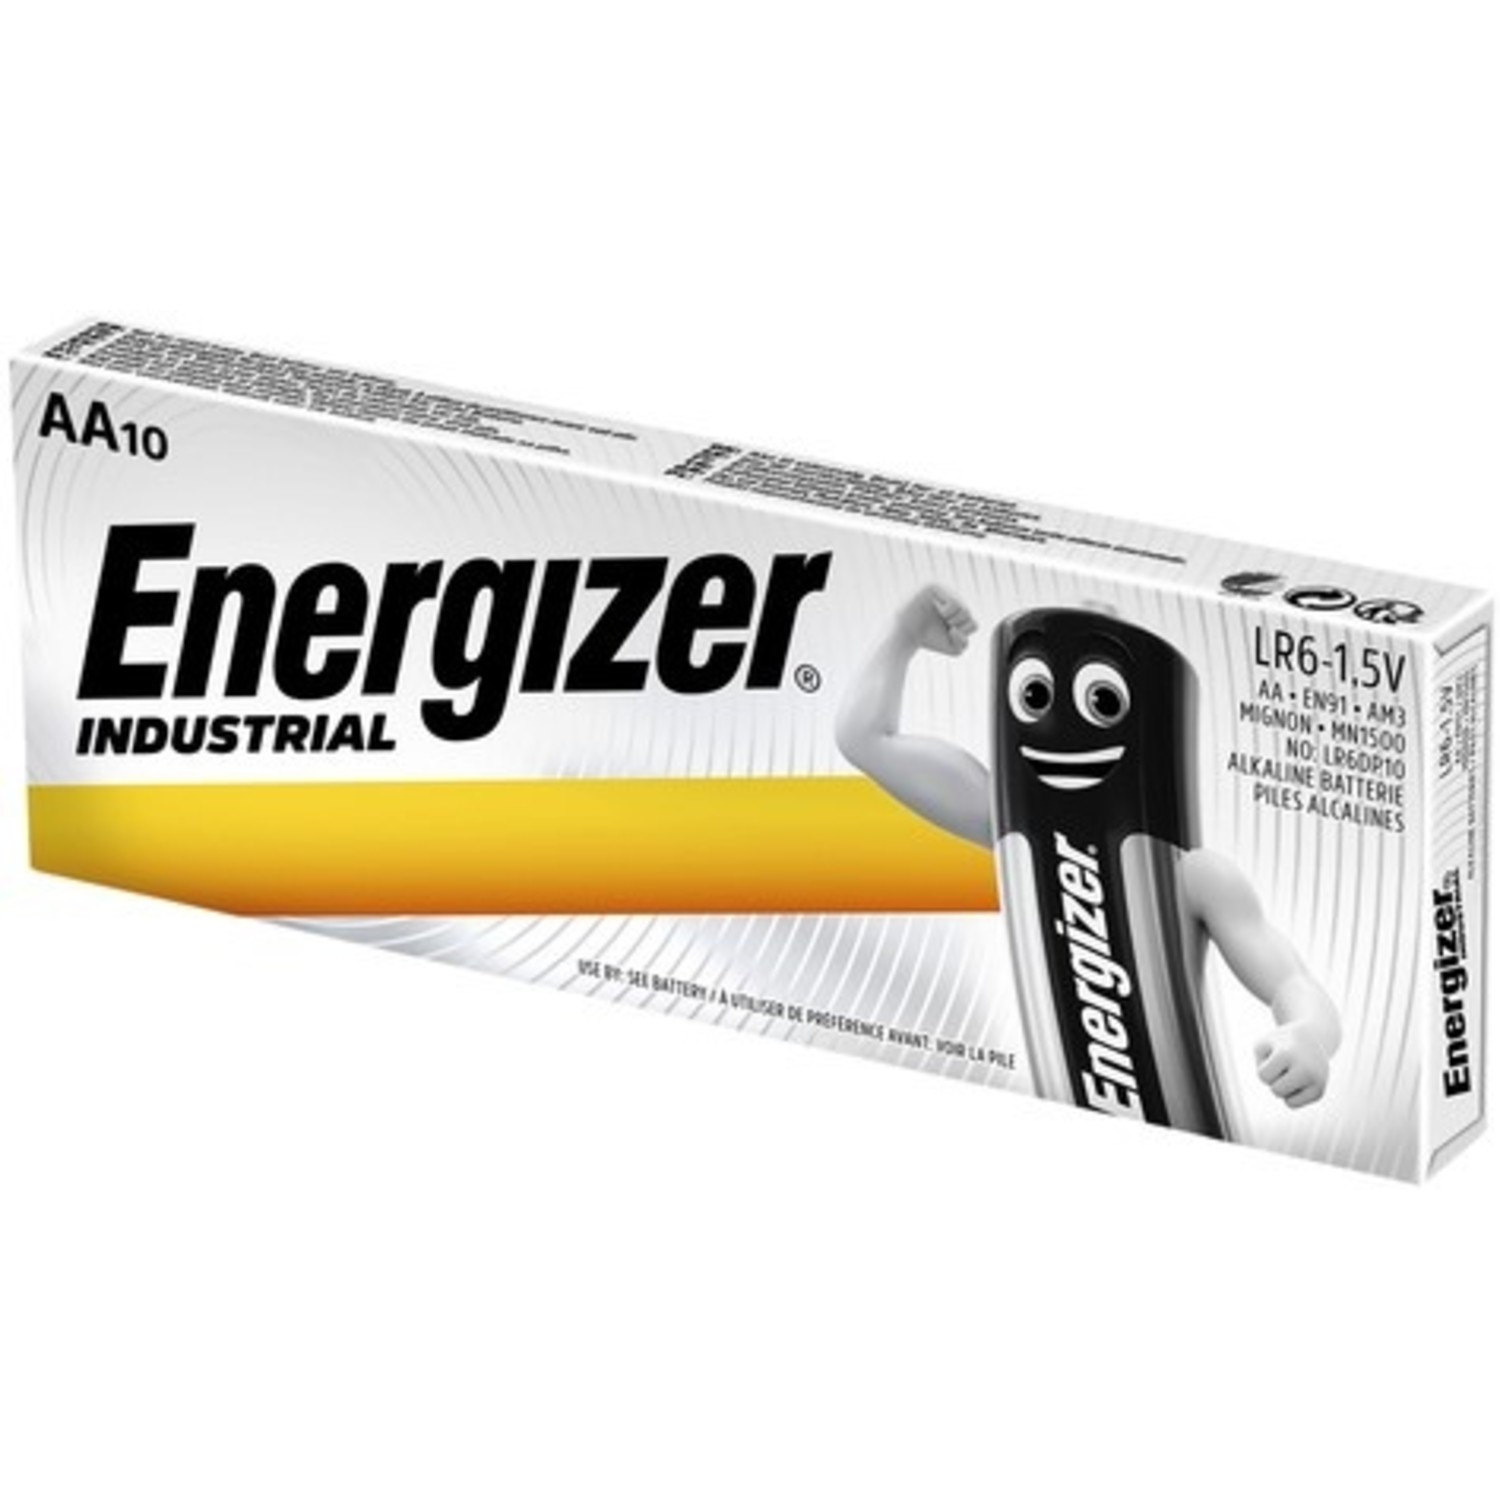 AA batterijen Energizer industrial Batterijenstunter.nl